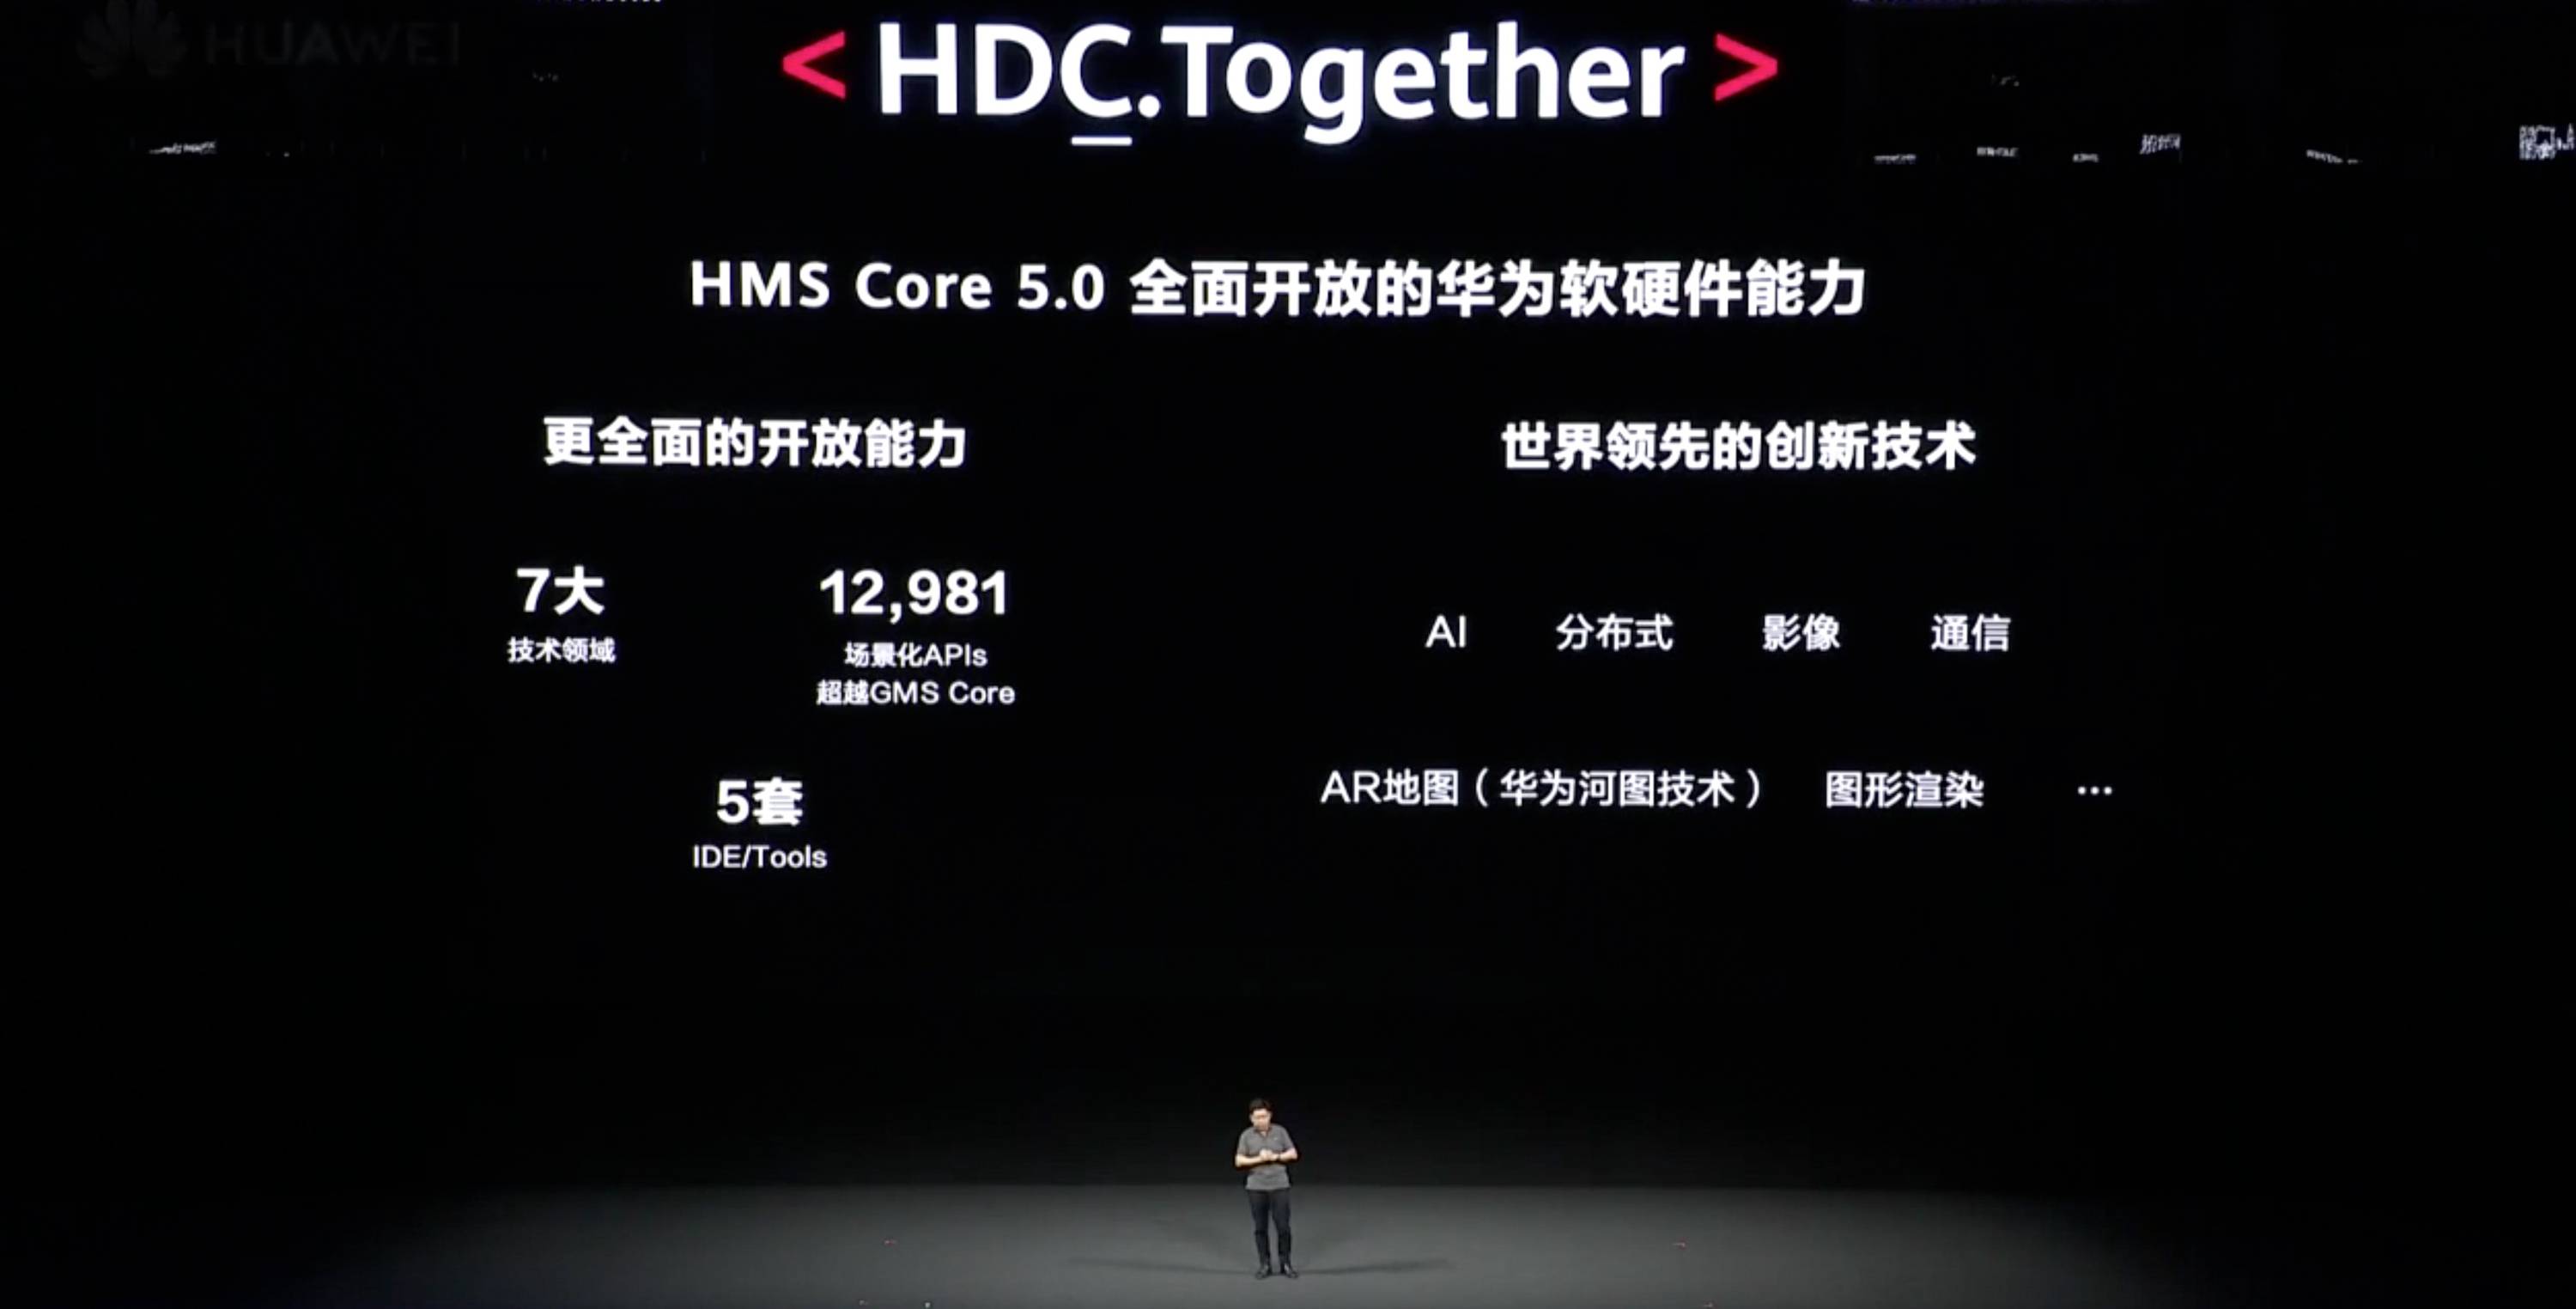 HDC 2020 PPT 19 - Huawei Hongmeng 2.0 è qui! Se non esegui un secondo Android, sarai sul tuo telefono entro la fine dell’anno